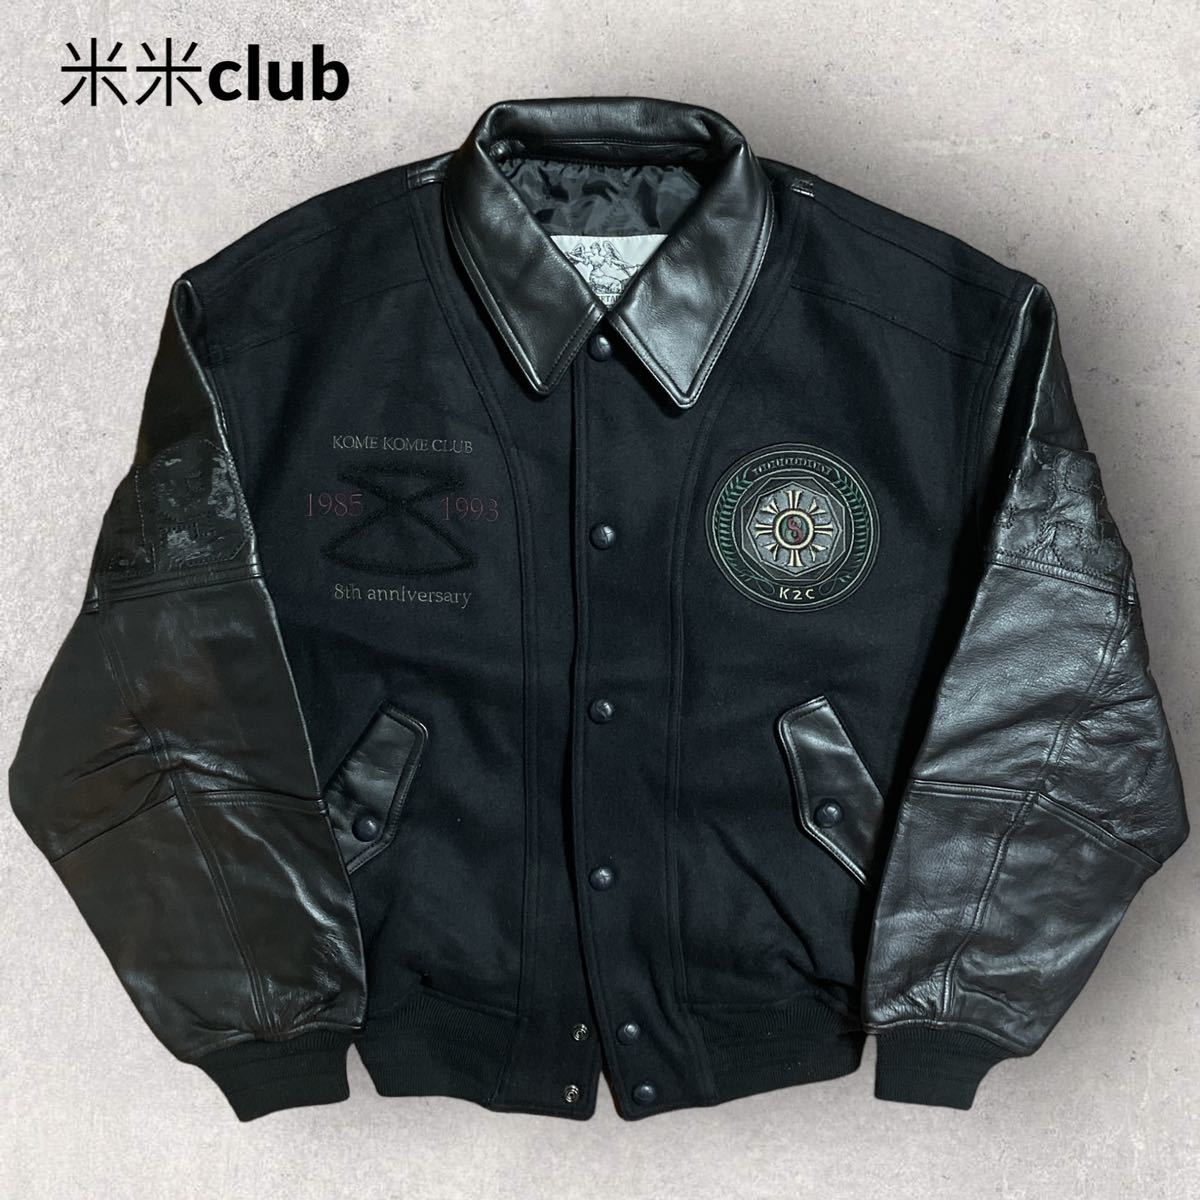 稀少 米米club 90s 8周年記念 1993 袖革スタジャン サイズ44 ブラック K2C 刺繍ワッペン キルティングライナー